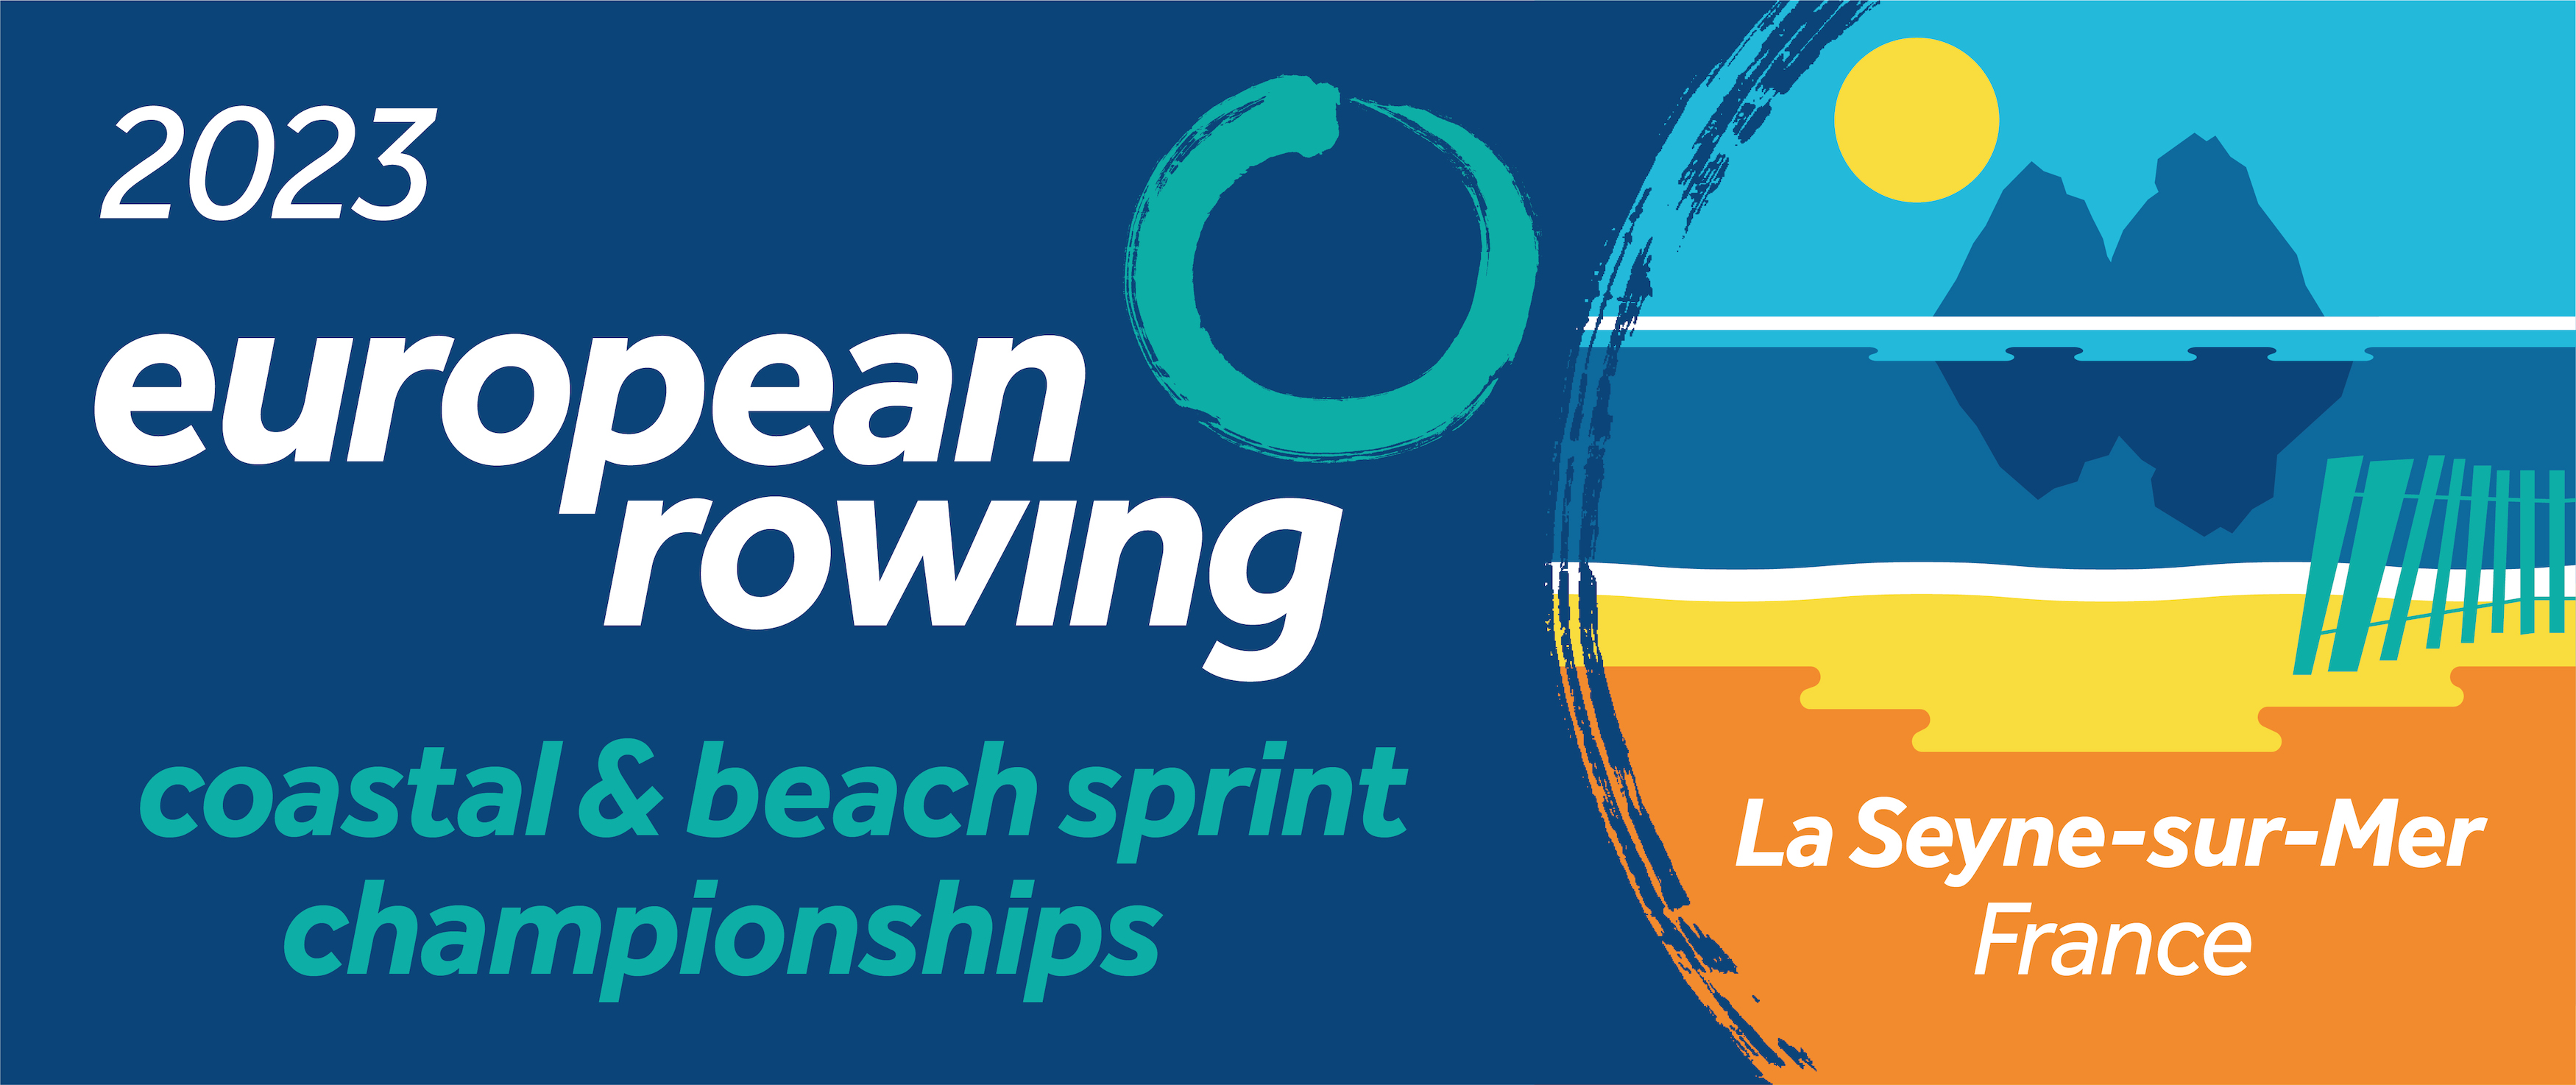 European rowing coastal and beach sprint